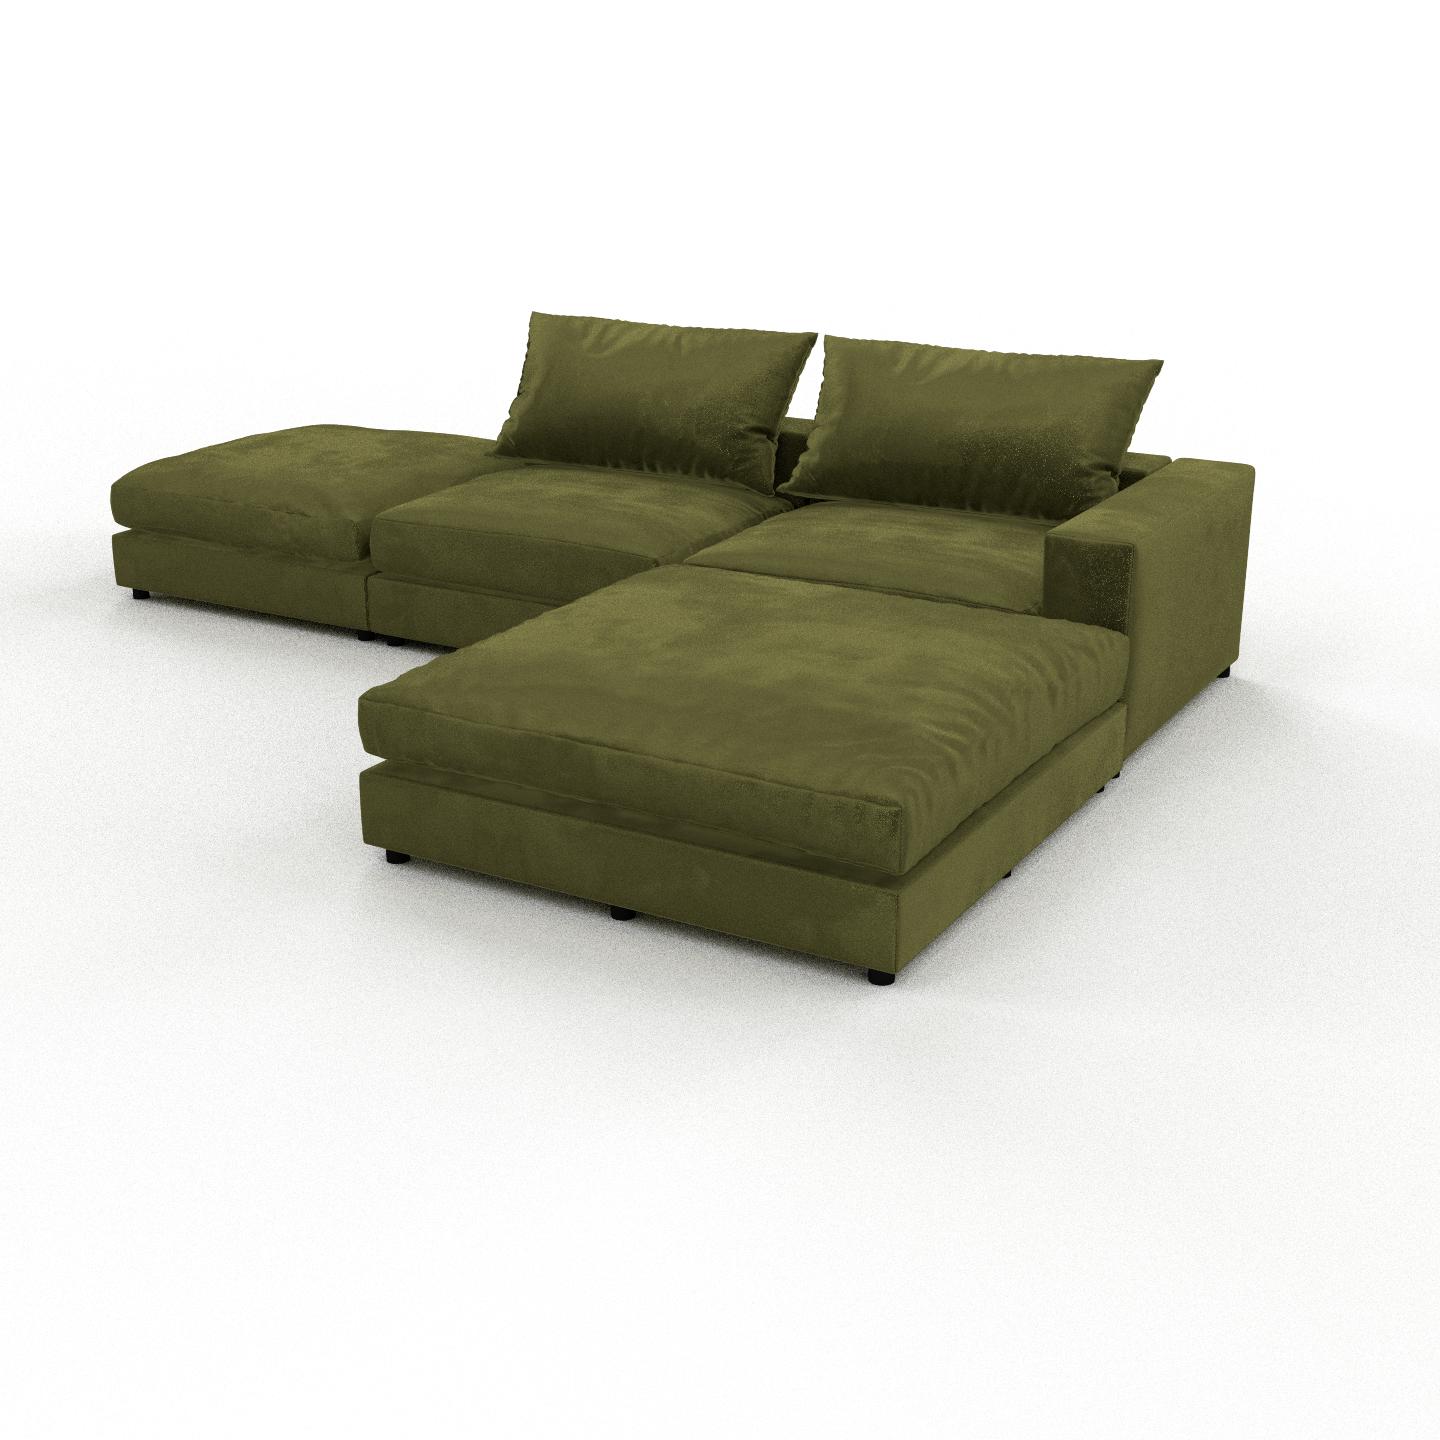 MYCS Sofa 3-Sitzer Samt Olivgrün Samt - Elegantes, gemütliches 3-Sitzer Sofa: Hochwertige Qualität, einzigartiges Design - 330 x 56 x 228 cm,...